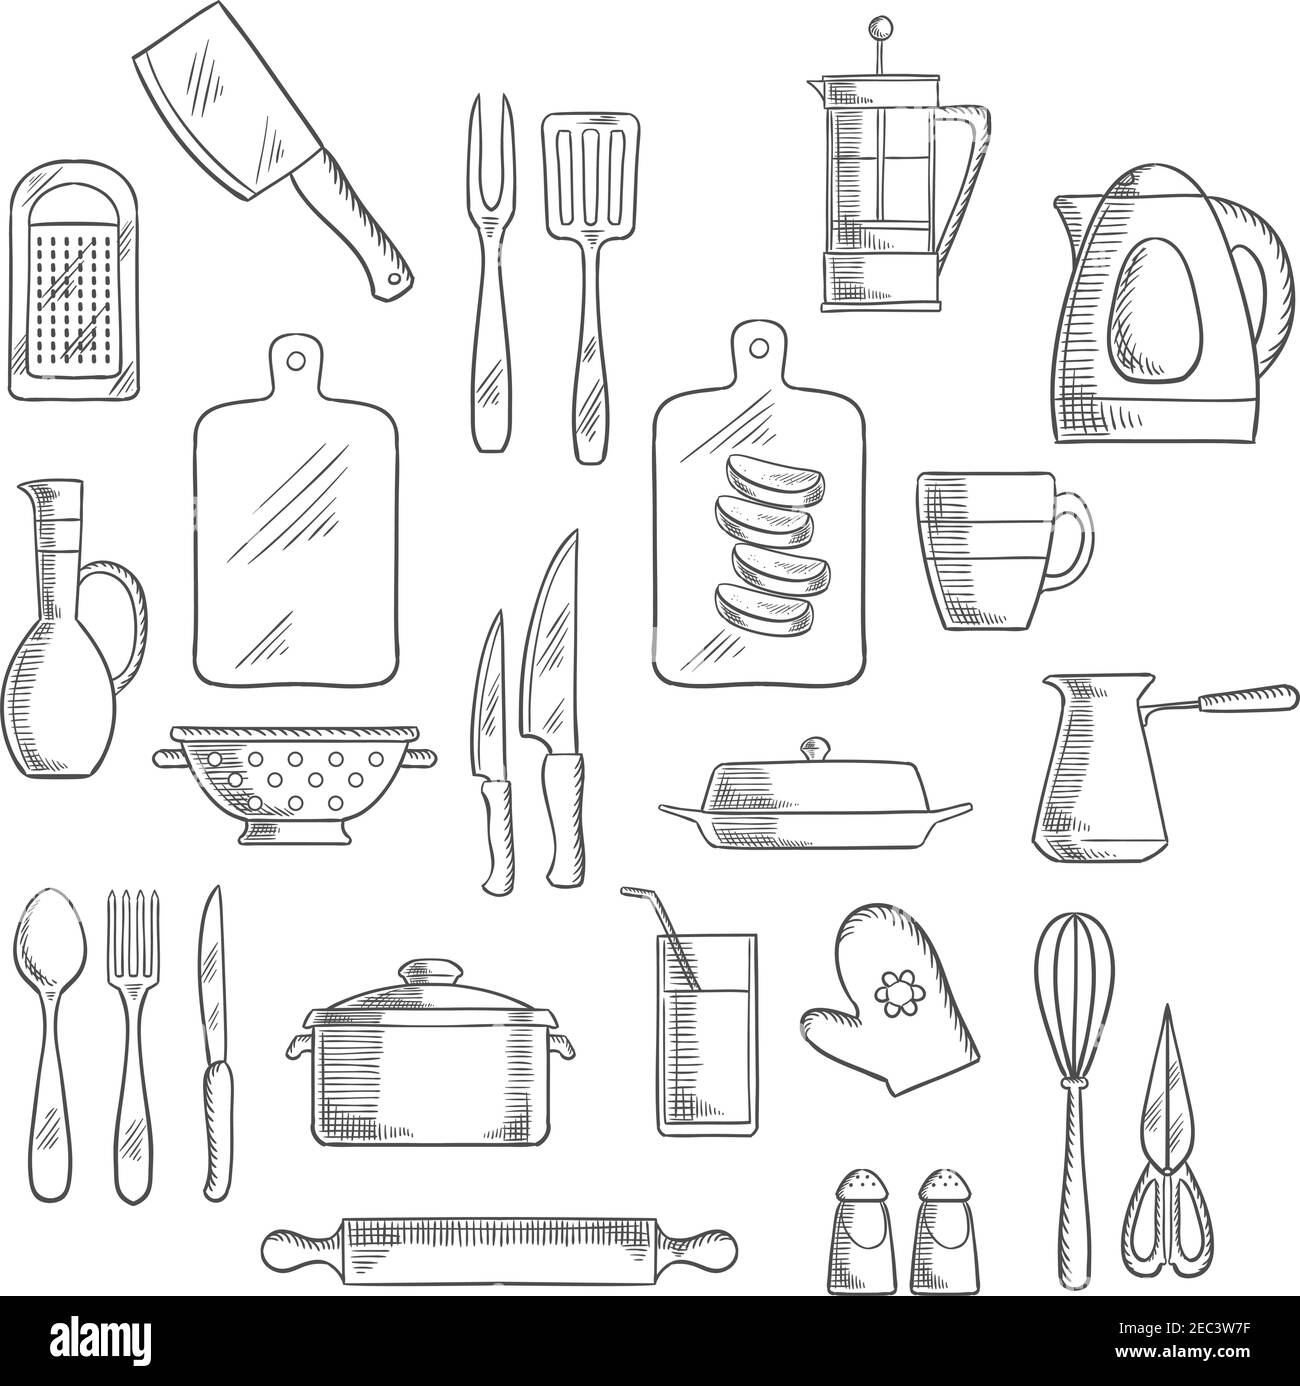 Küchengeräte und Geräte skizzieren Ikonen von Tee und Kaffee Töpfe, Messer, Gabeln und Löffel, Tasse, Glas und Kanne, Spachtel und Schneidebretter, Reibe A Stock Vektor